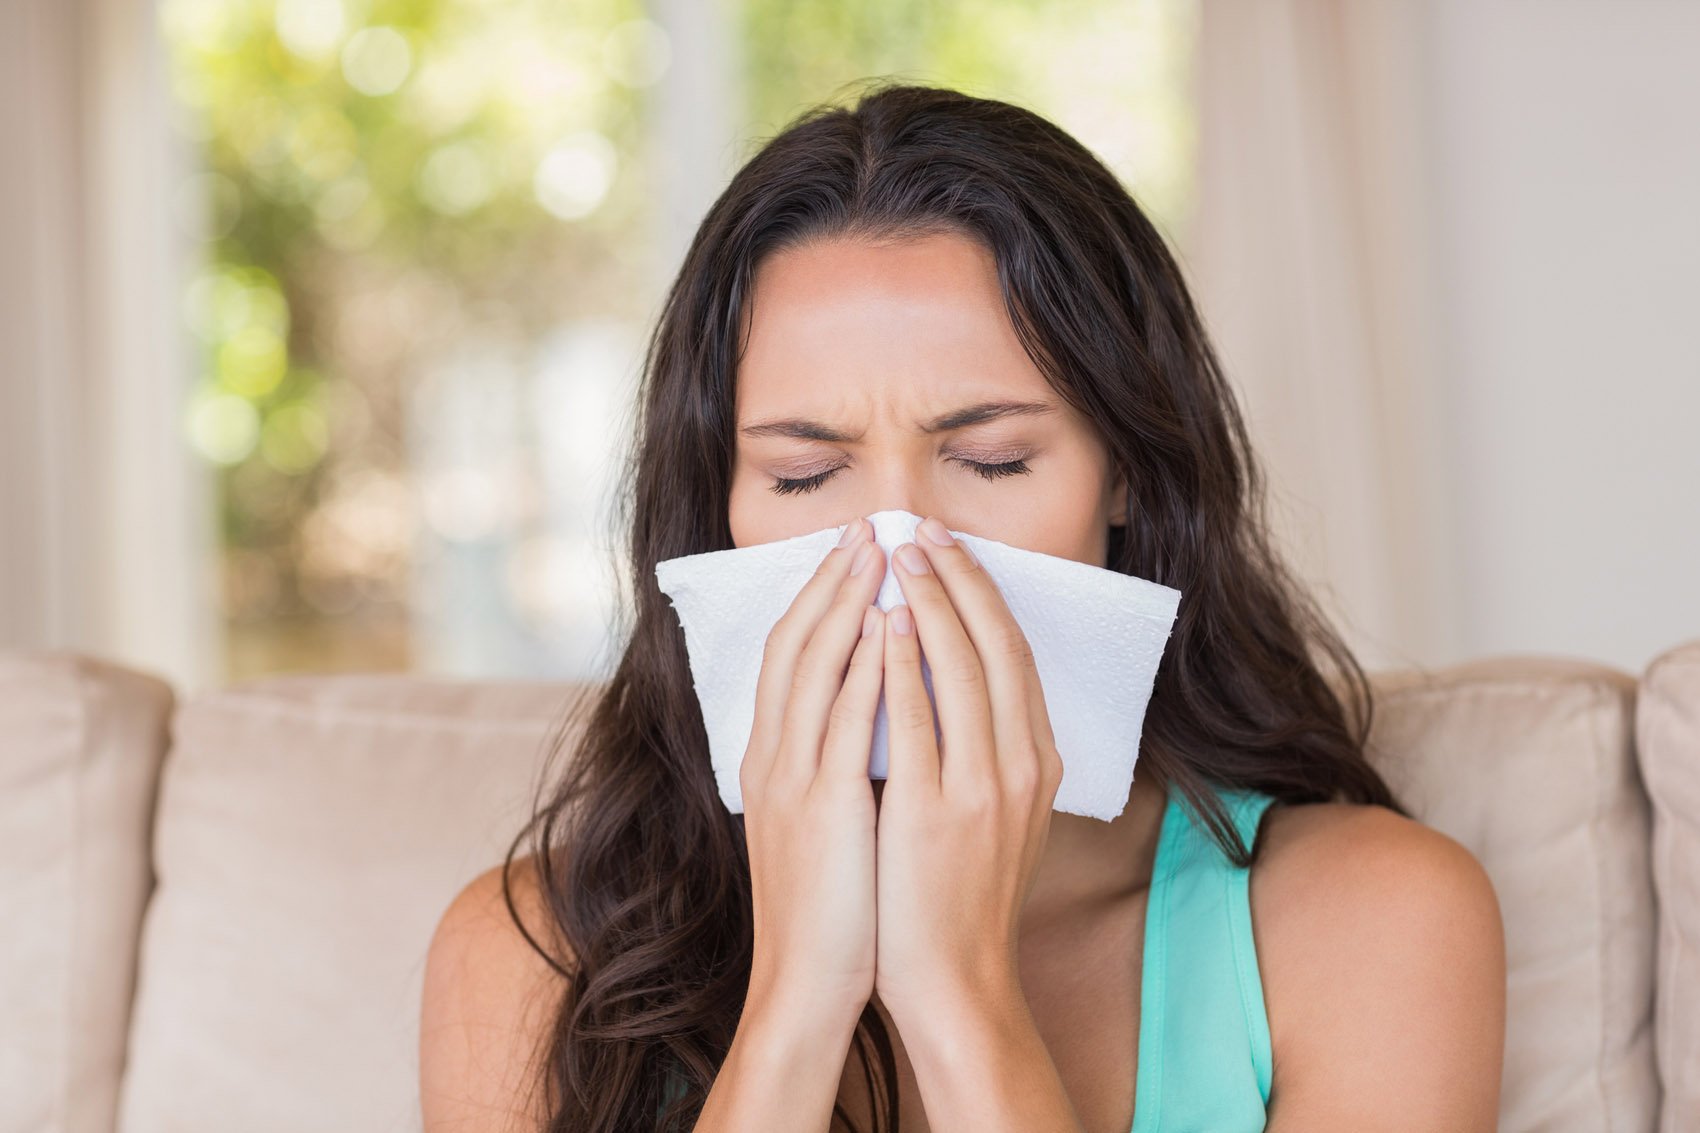 allergia, casa, raffreddore